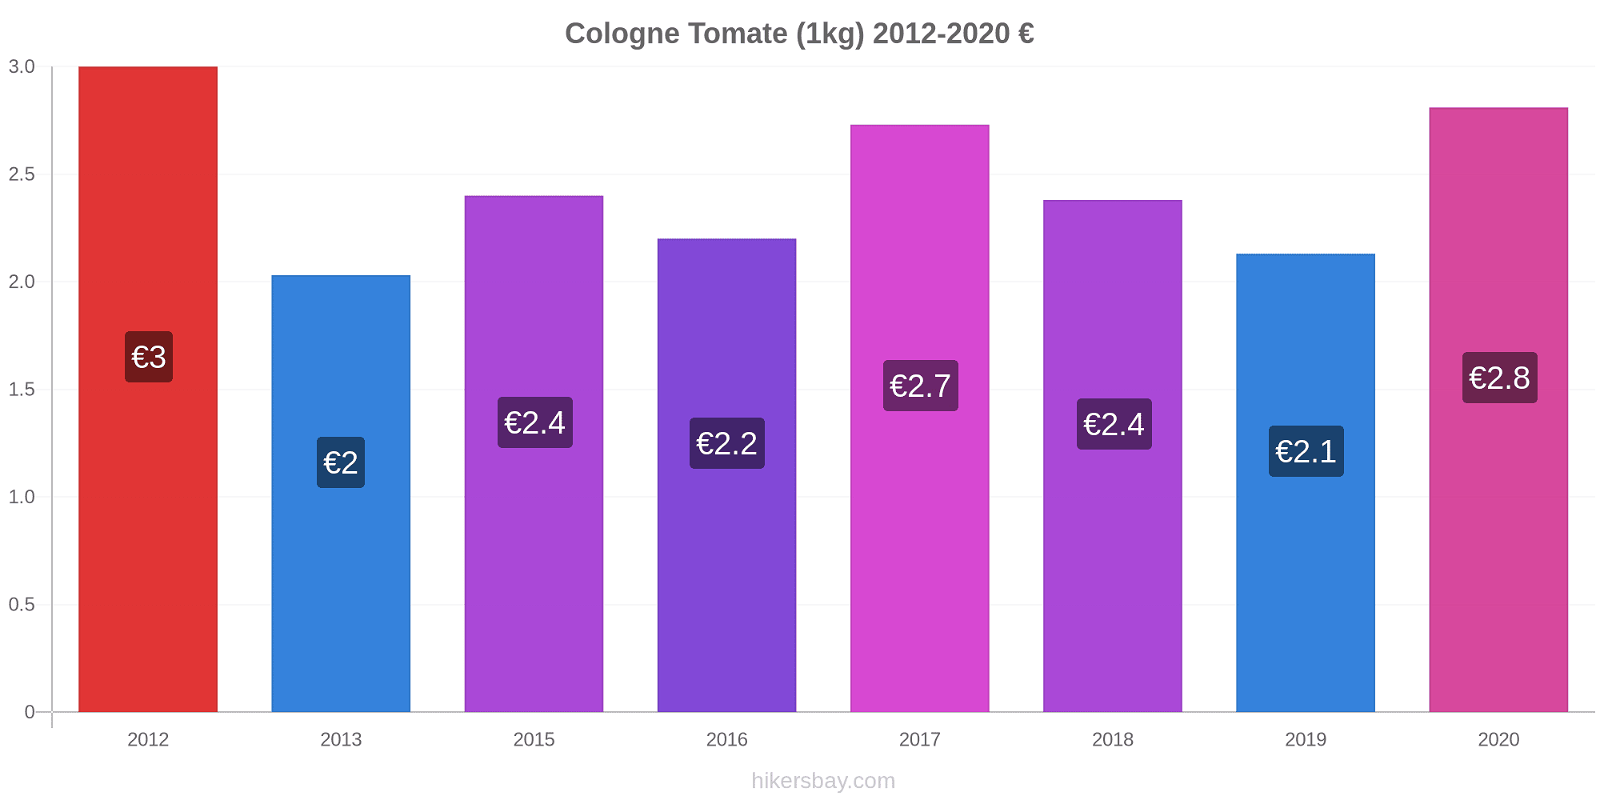 Cologne changements de prix Tomate (1kg) hikersbay.com